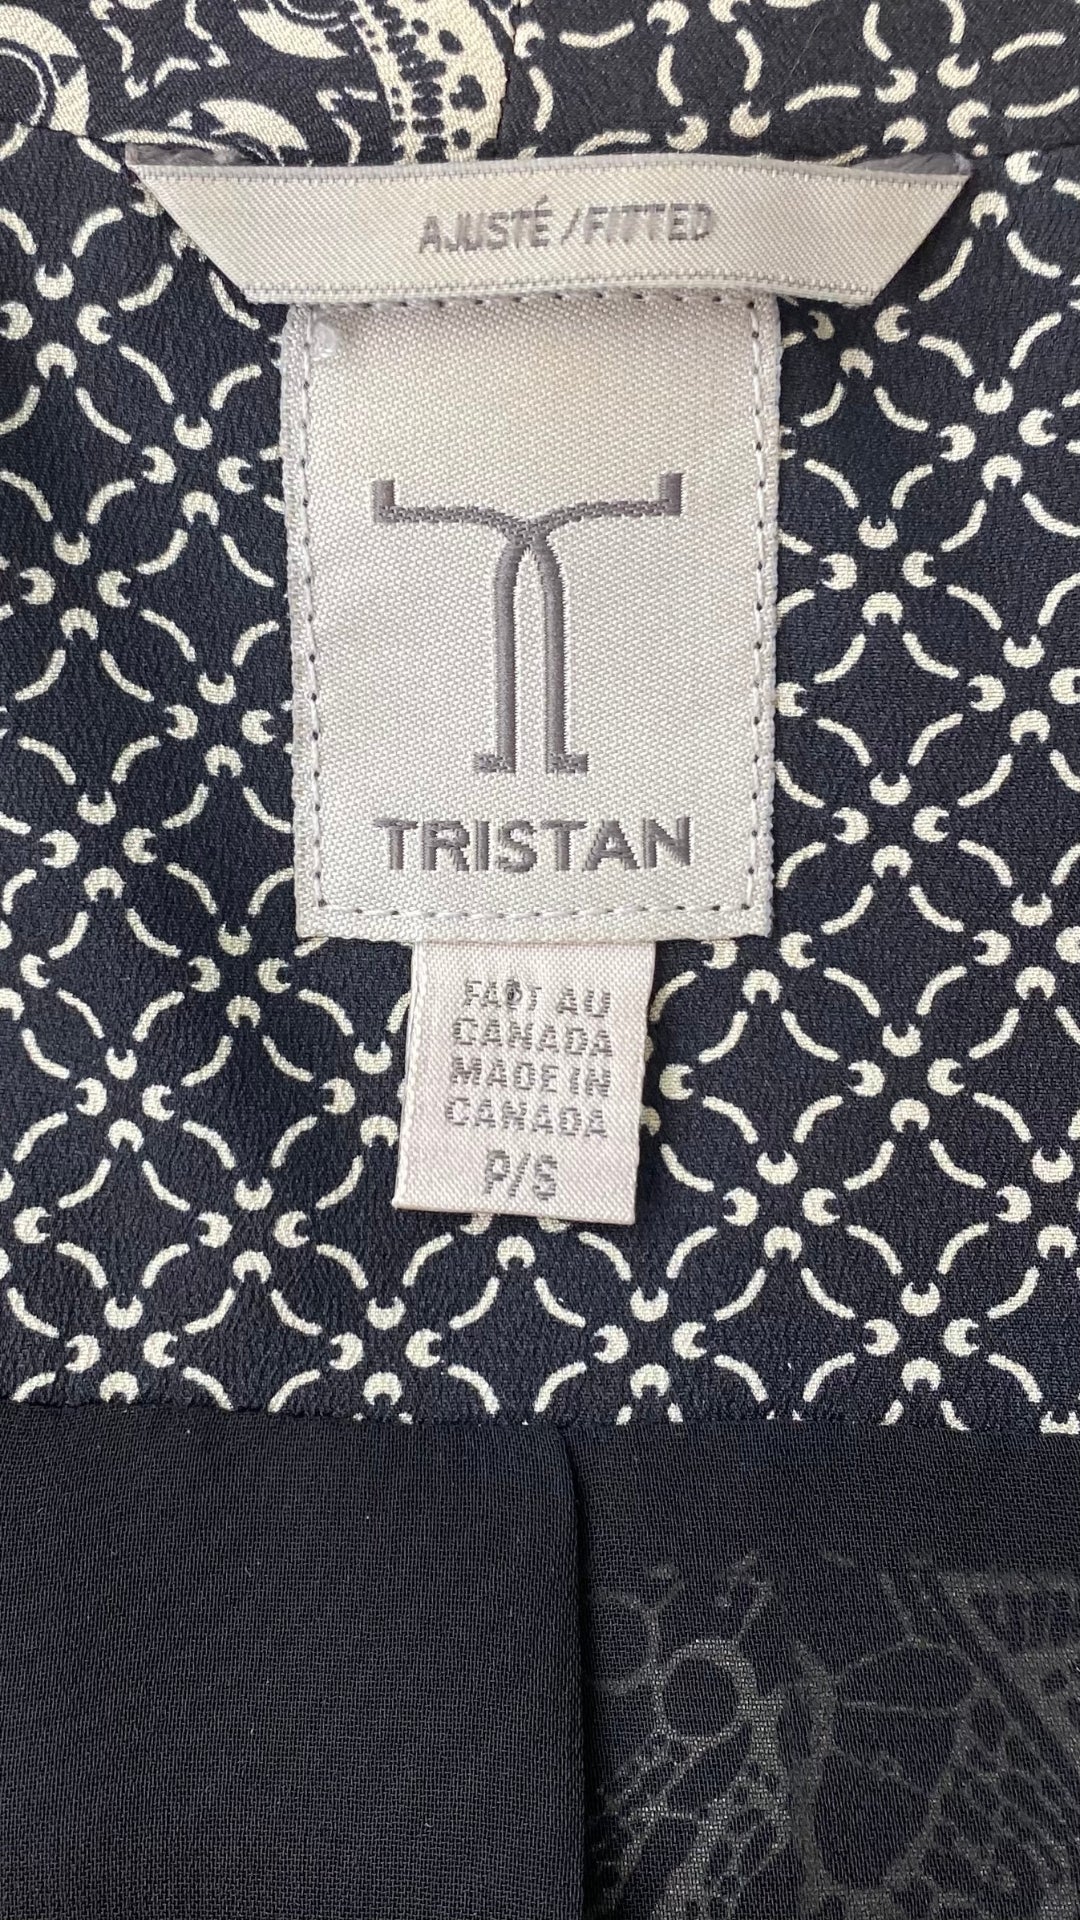 Veste courte Tristan fluide à motifs chics qui s'agencent avec tout. Vue de l'étiquette de marque et taille.